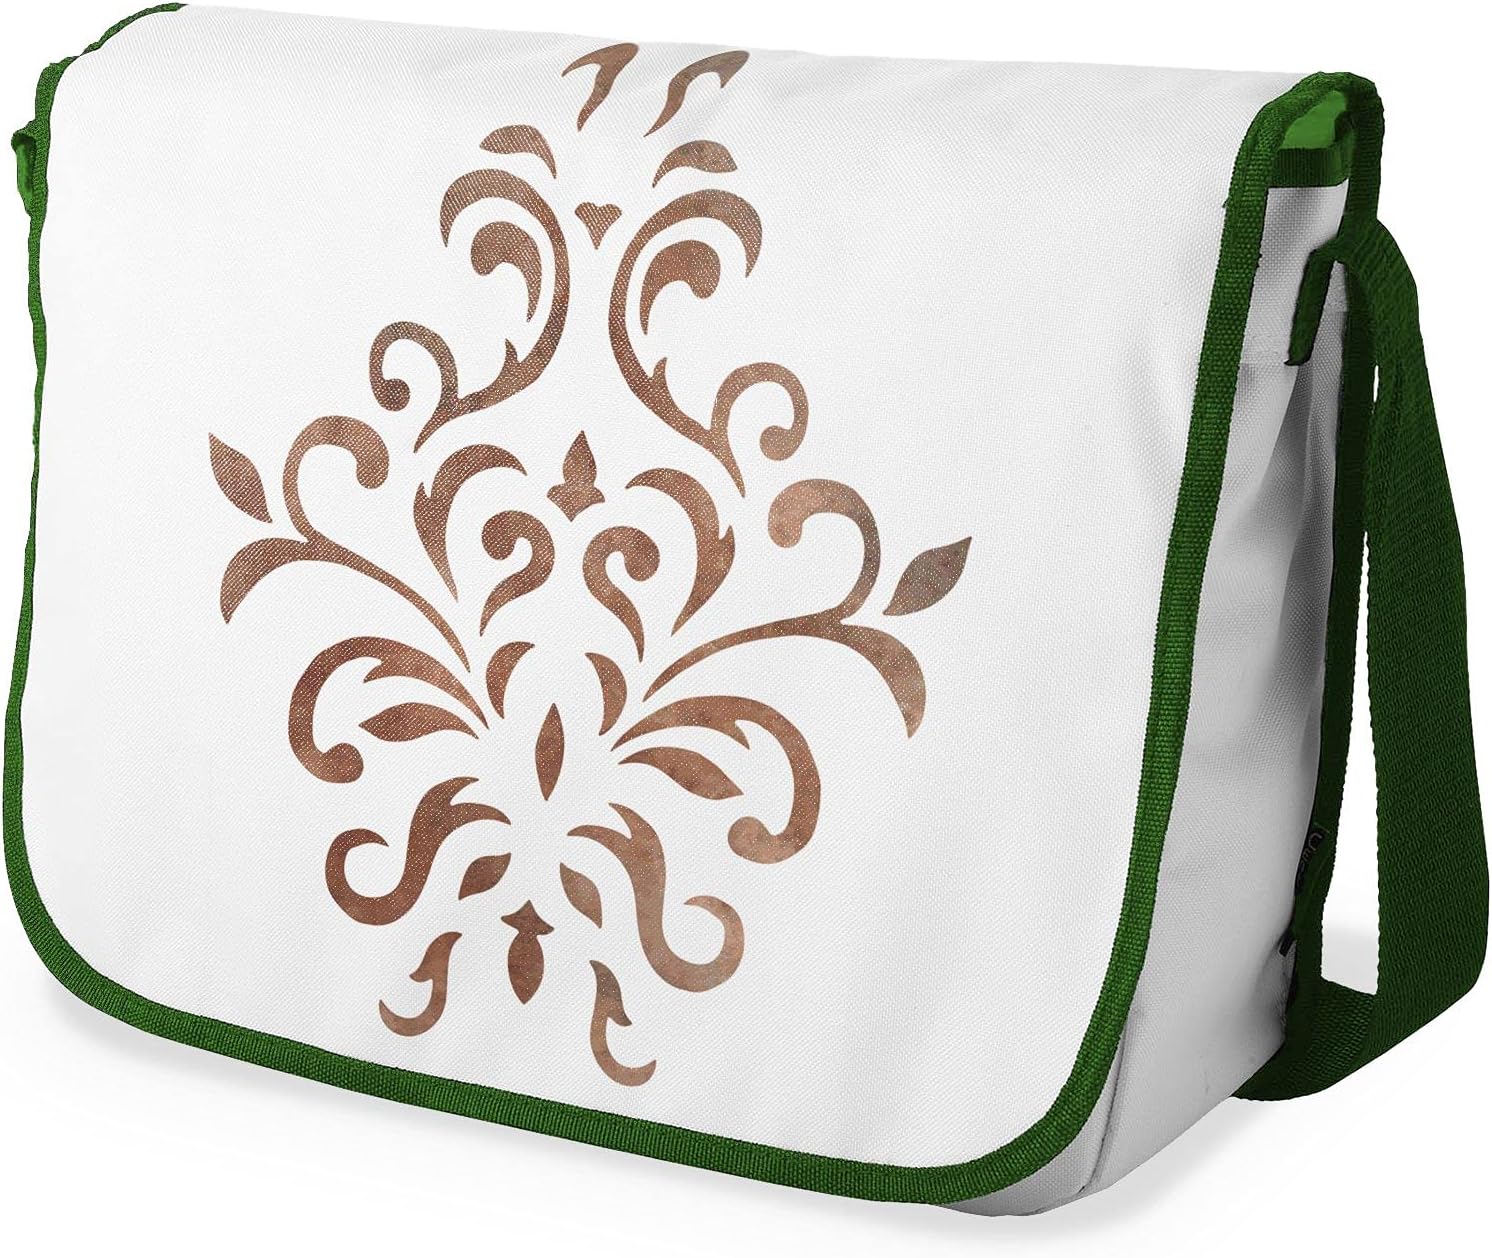 Bonamaison Brown Tribal Pattern Messenger School Bag w/ Khaki Strap RRP 16.91 CLEARANCE XL 9.99